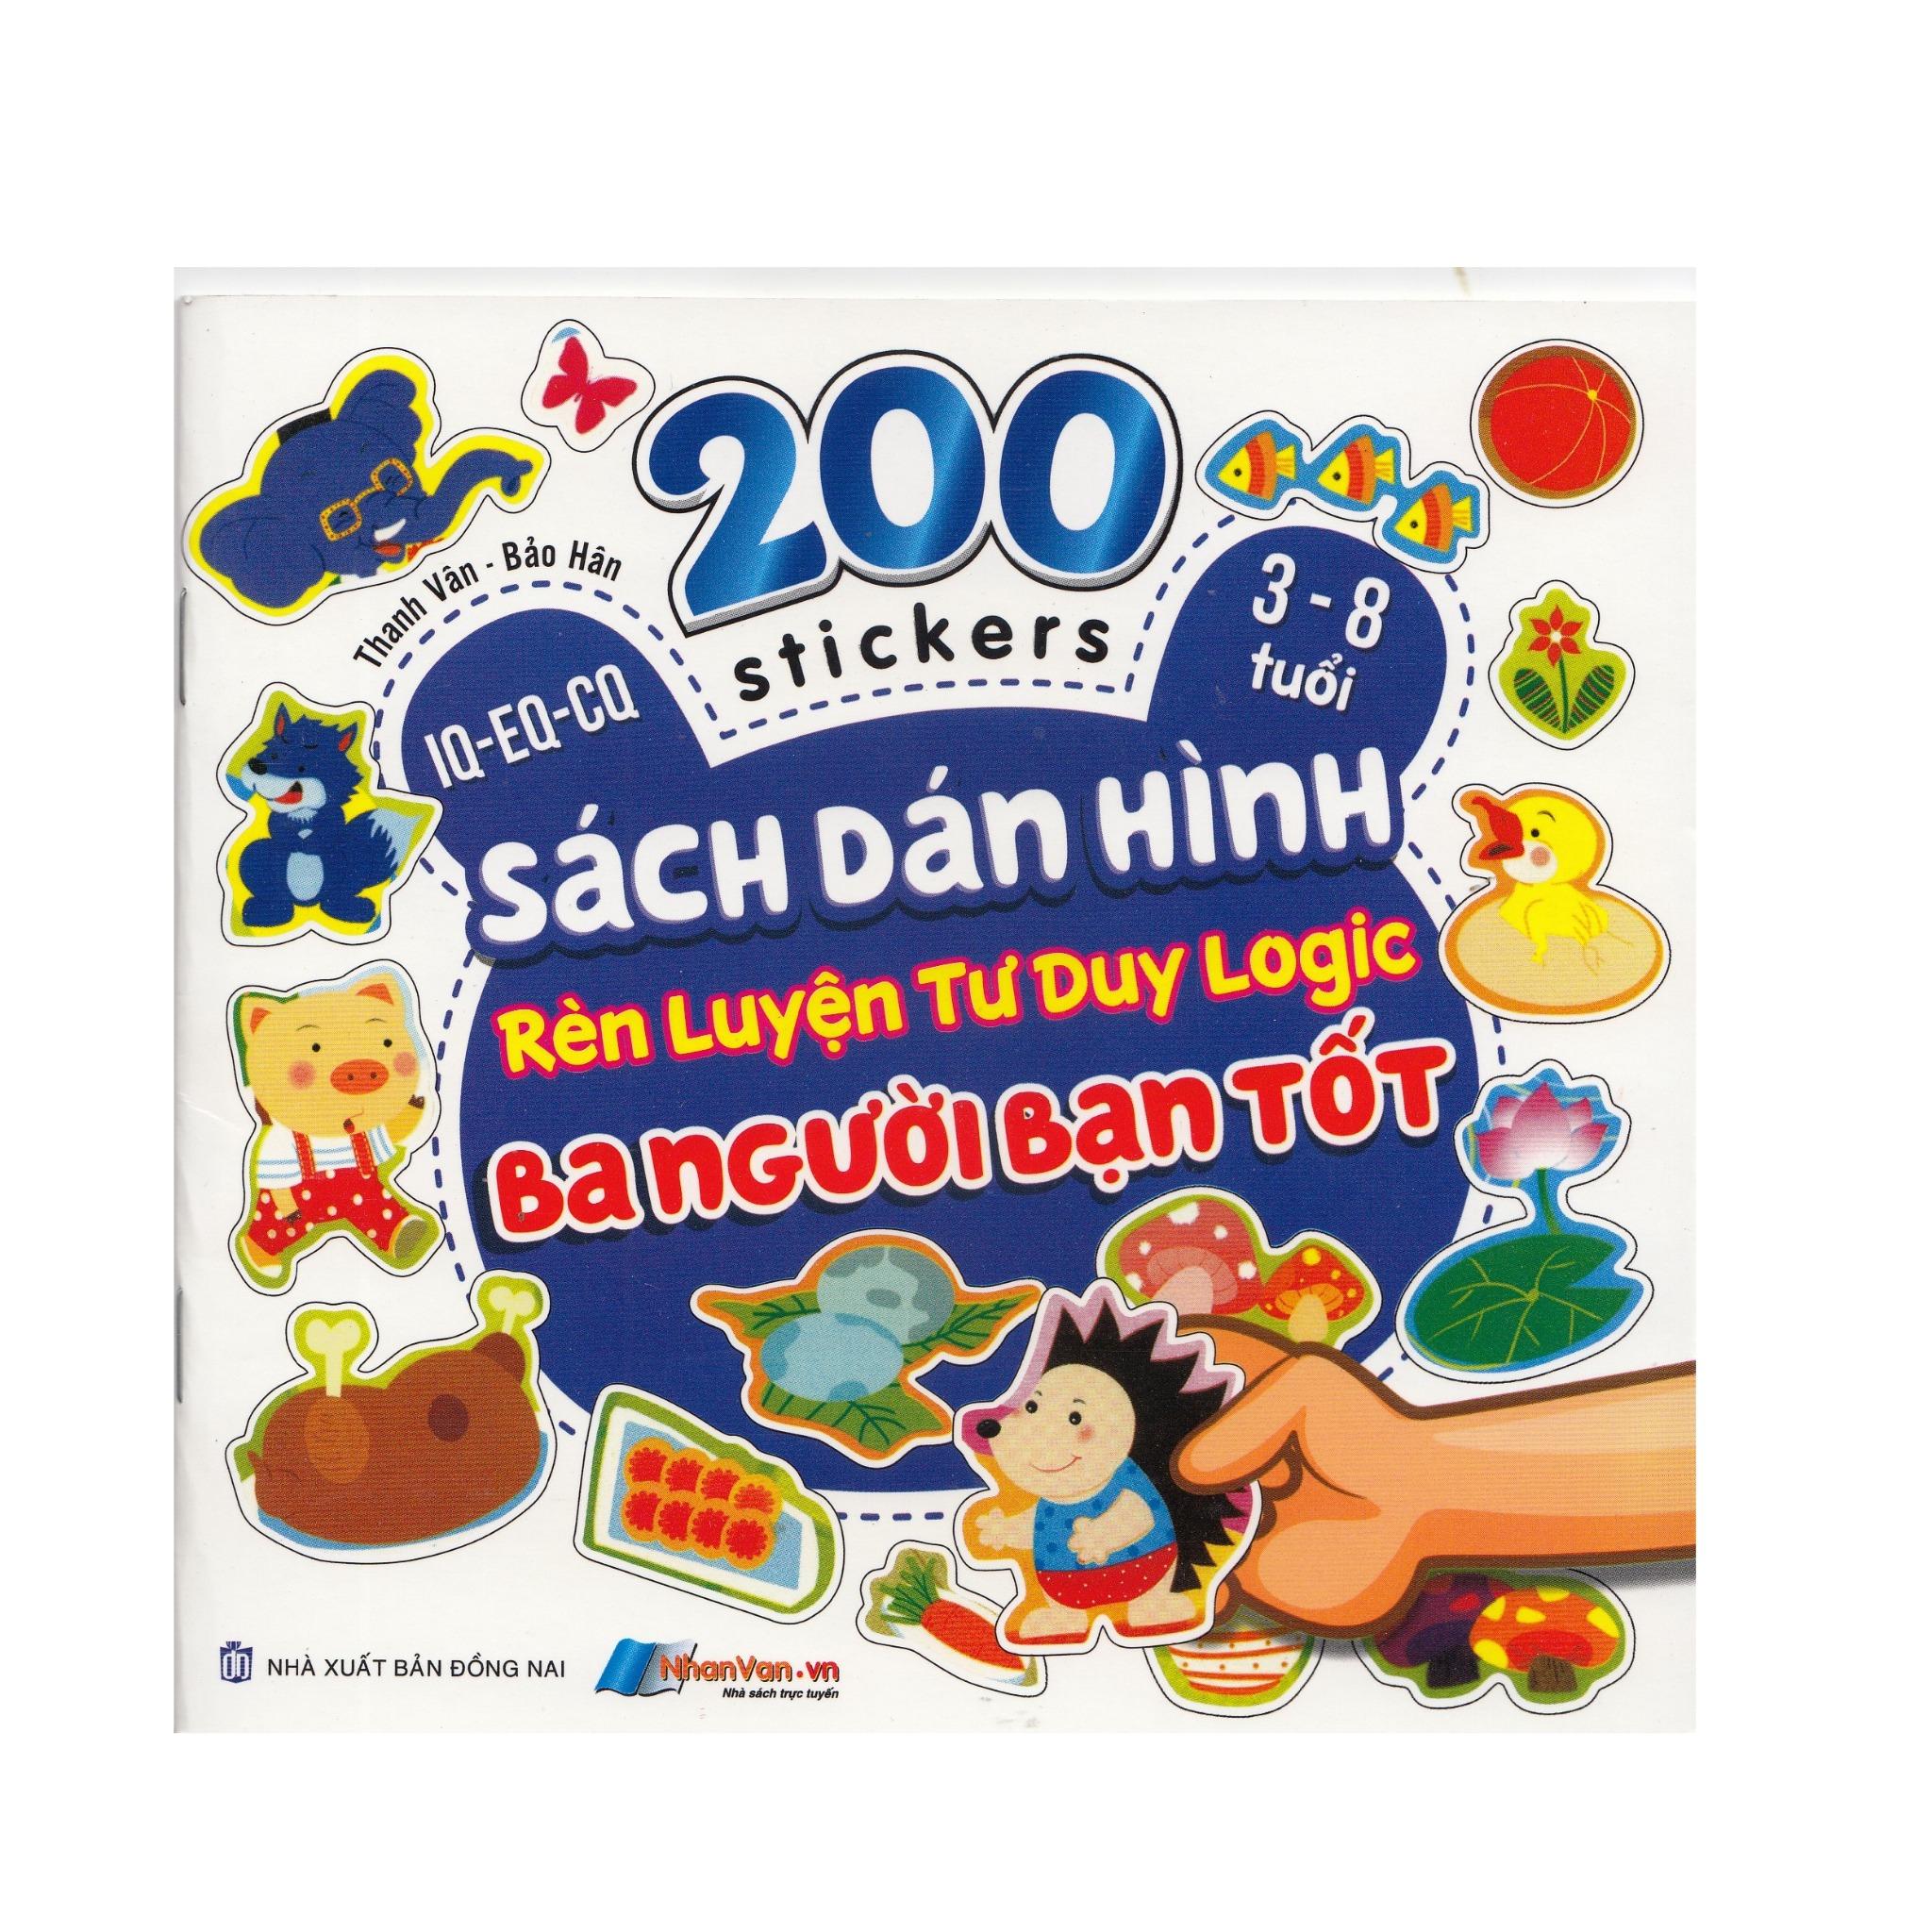 200 Stickers - 3-8 Tuổi - Sách Dán Hình Rèn Luyện Tư Duy Logic - Ba Người Bạn Tốt